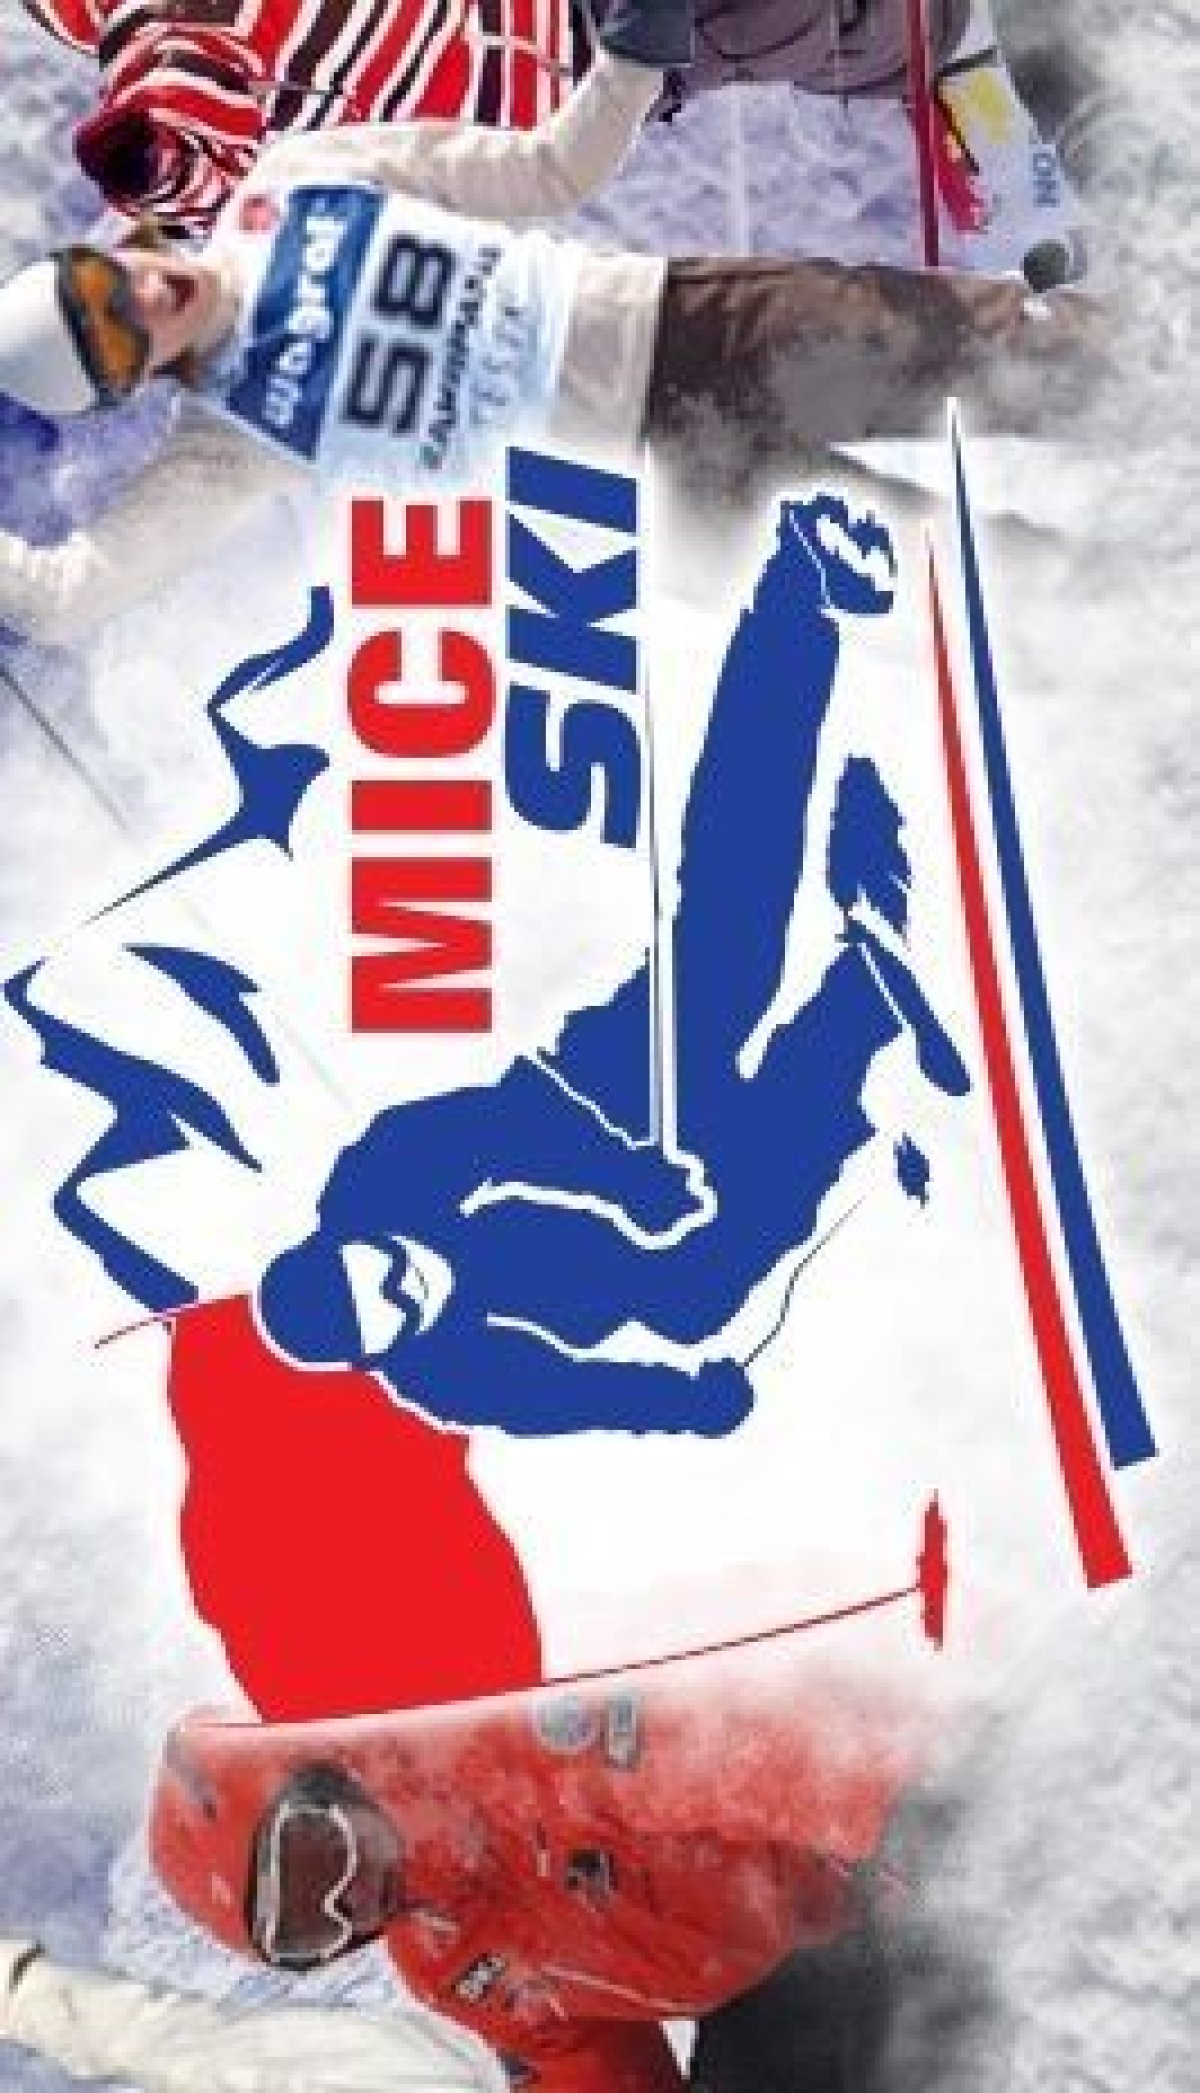 MICE Ski 2015